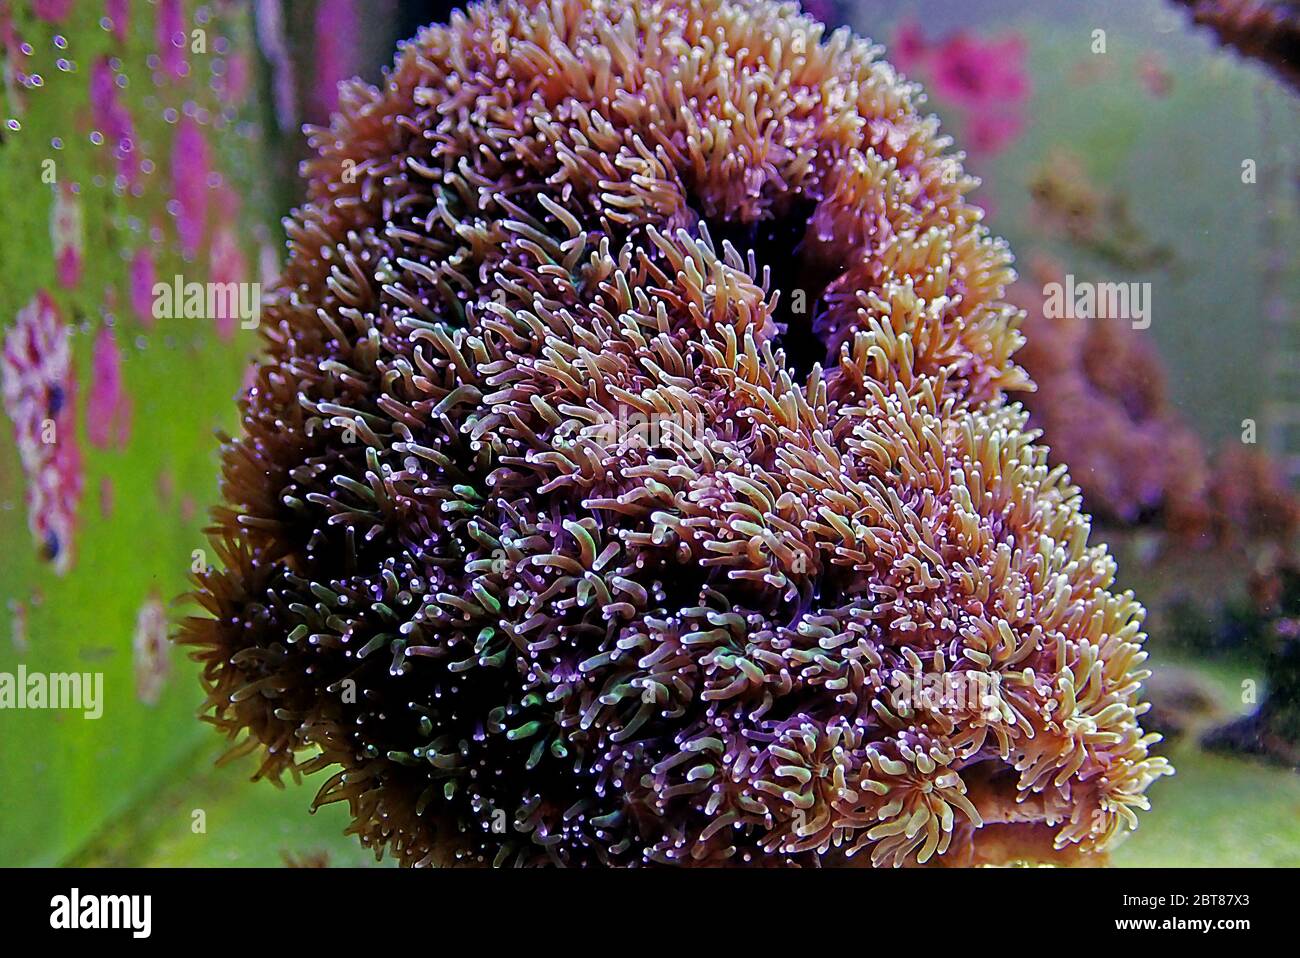 Metalic Long Polyp Galaxea Coral - (Galaxea astreata) Stock Photo